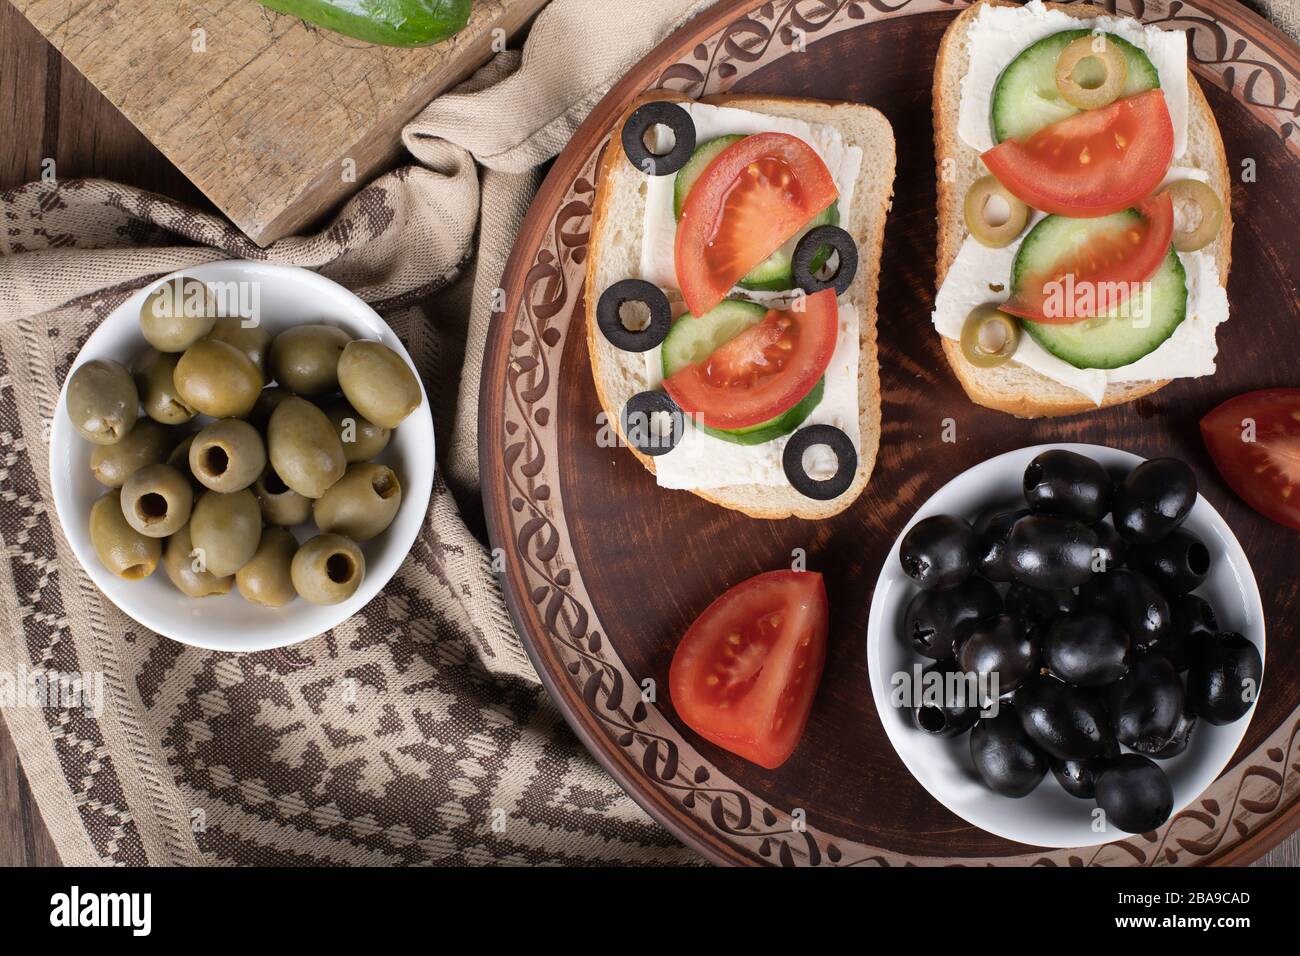 Olives noires marinées avec mini-sandwichs dans un plateau. Vue de dessus Banque D'Images